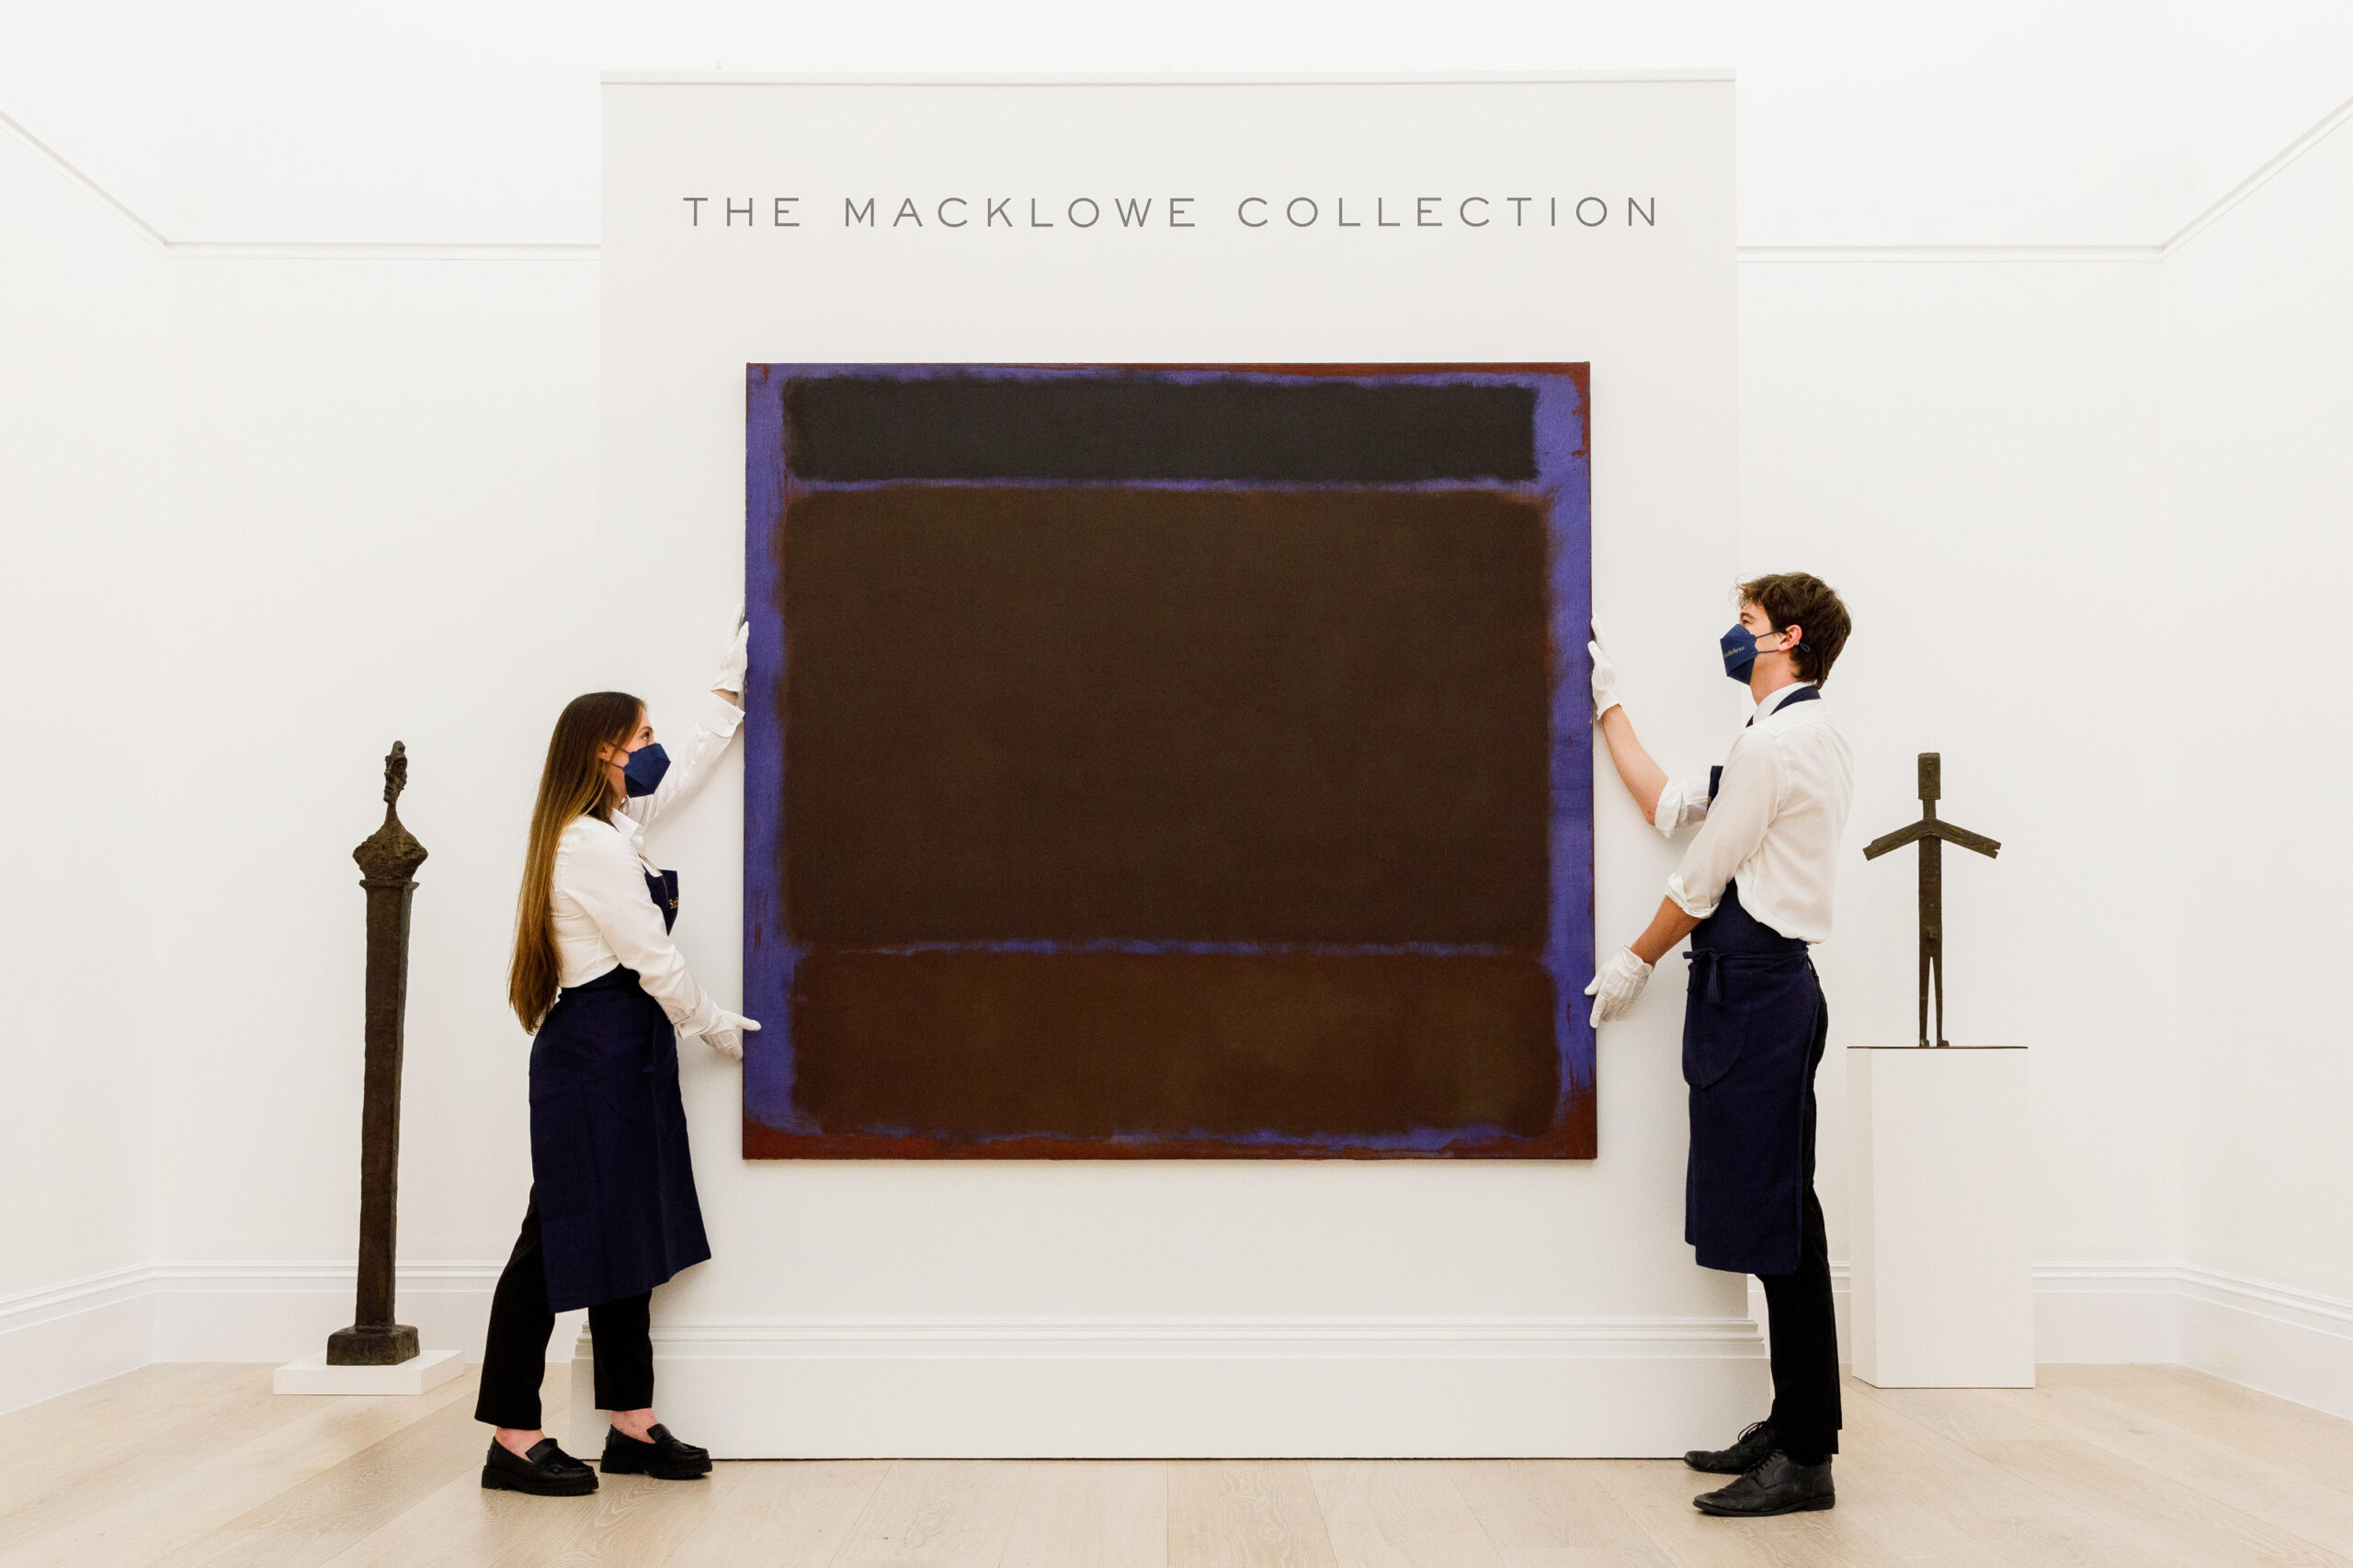 Collezione Macklowe: è la più cara di sempre nella storia delle aste con 922 milioni $